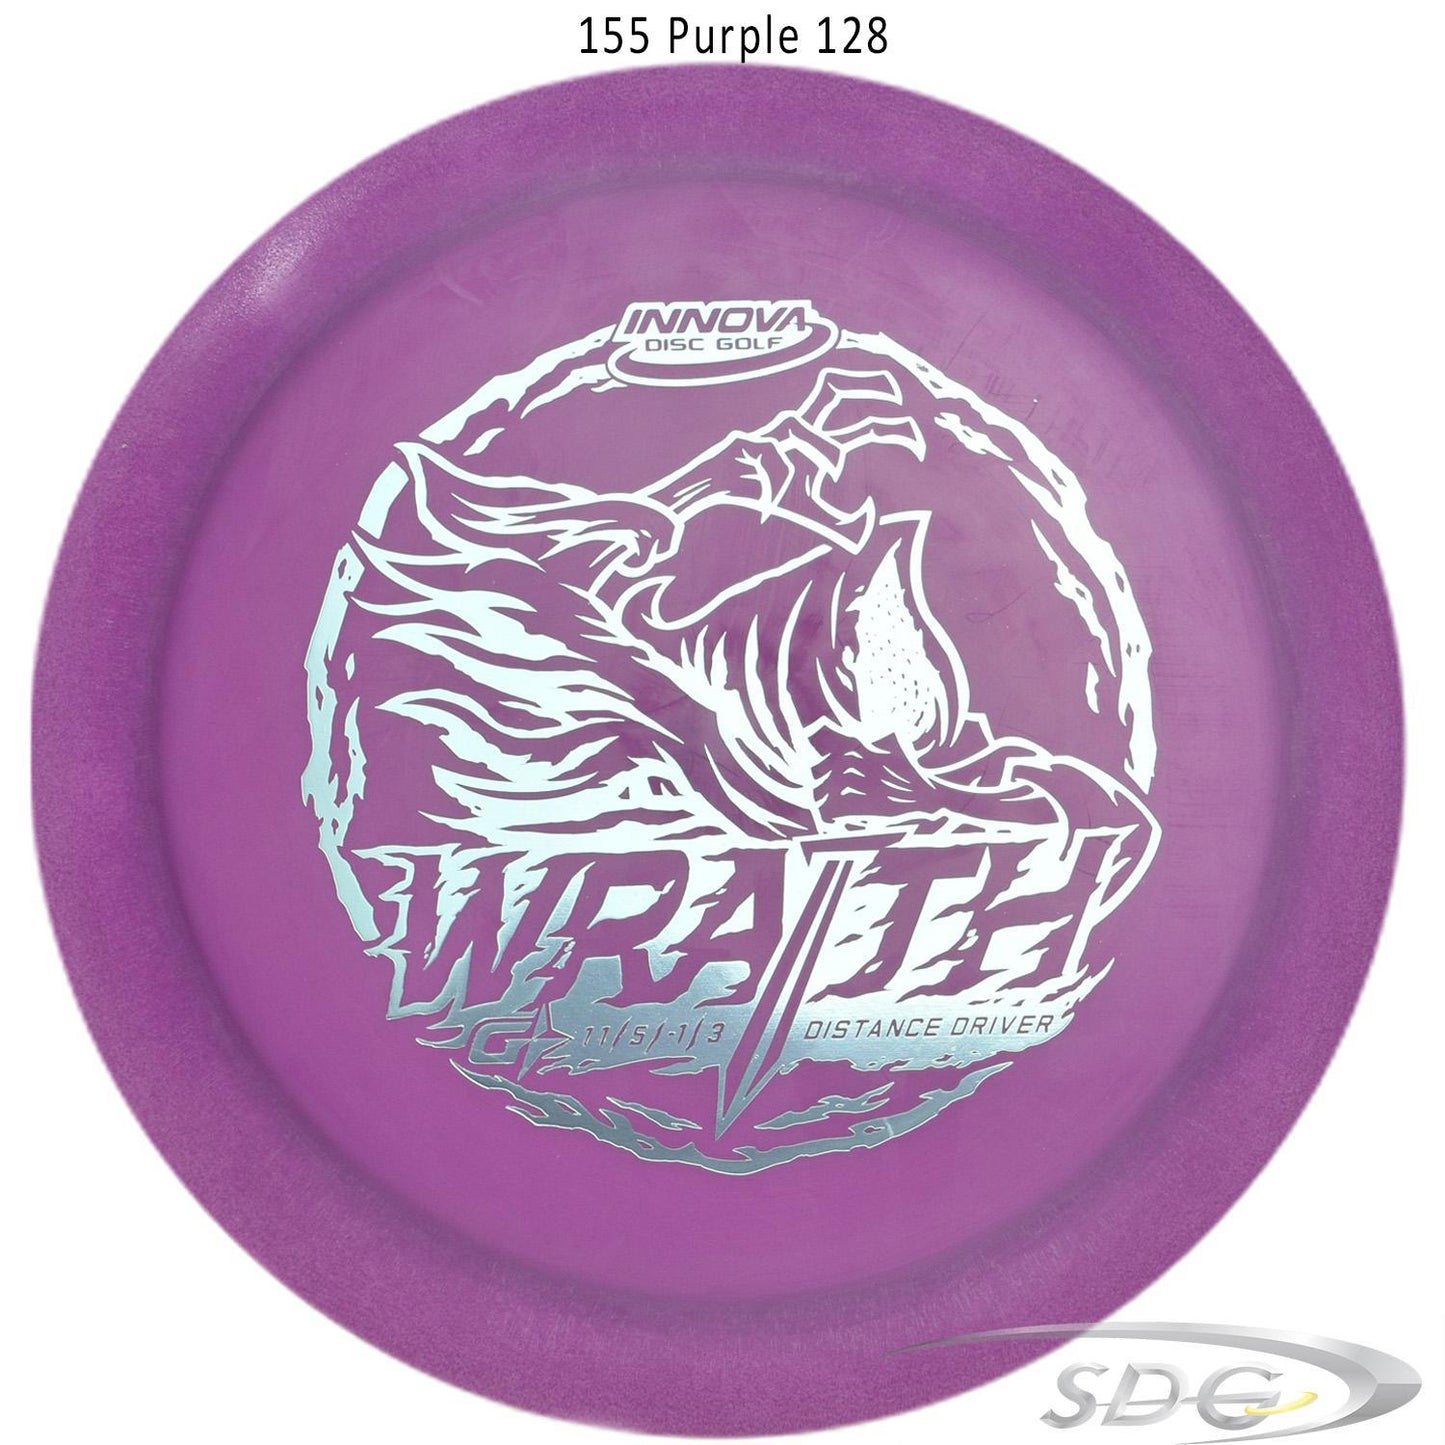 innova-gstar-wraith-disc-golf-distance-driver 155 Purple 128 